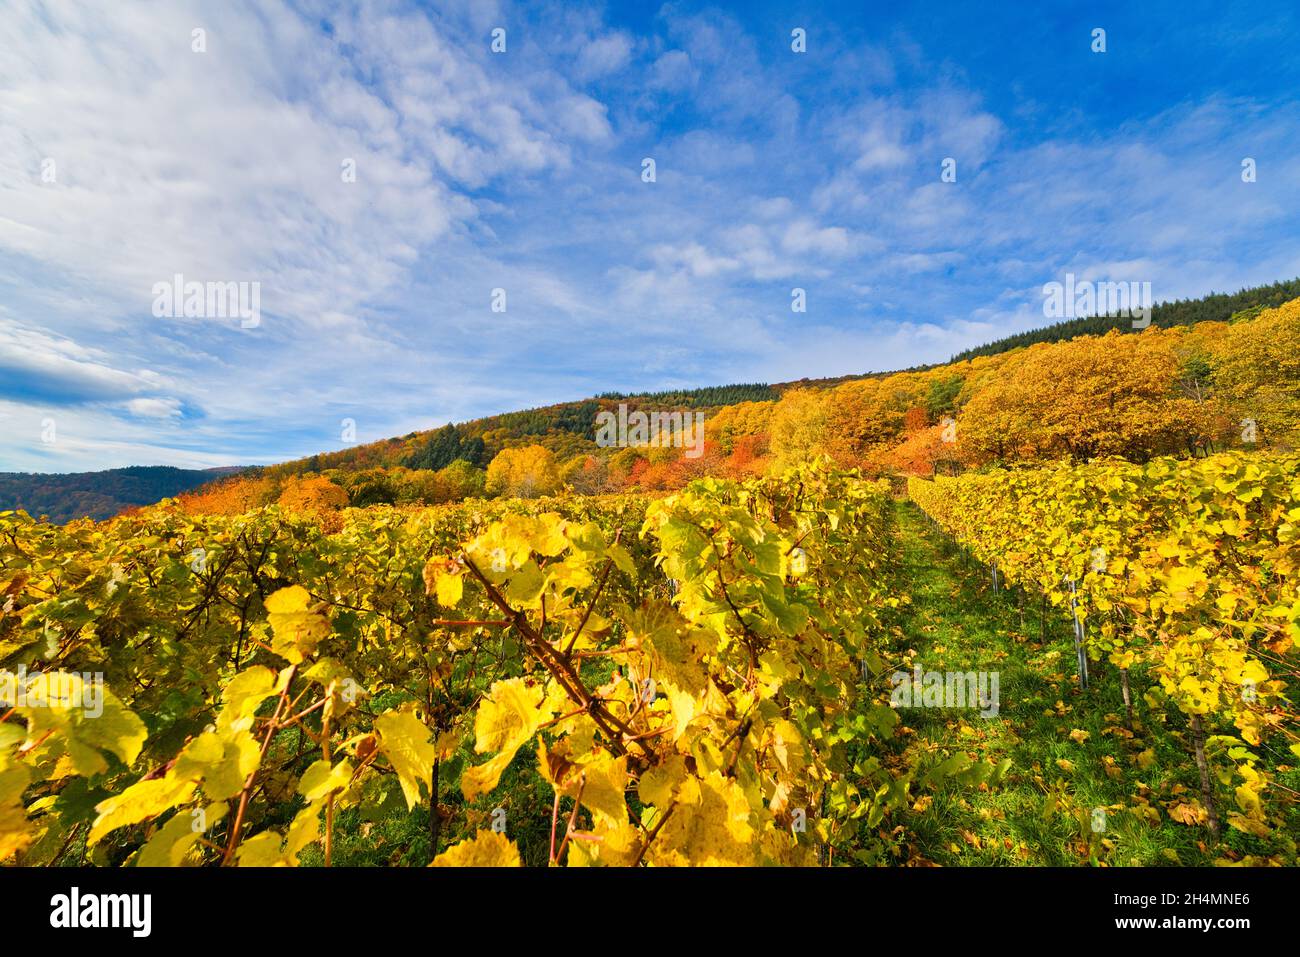 Sunny colorful vineyards landscape in autumn. Rhineland-Palatinate, Germany. Vineyard Rural autumn landscape Stock Photo